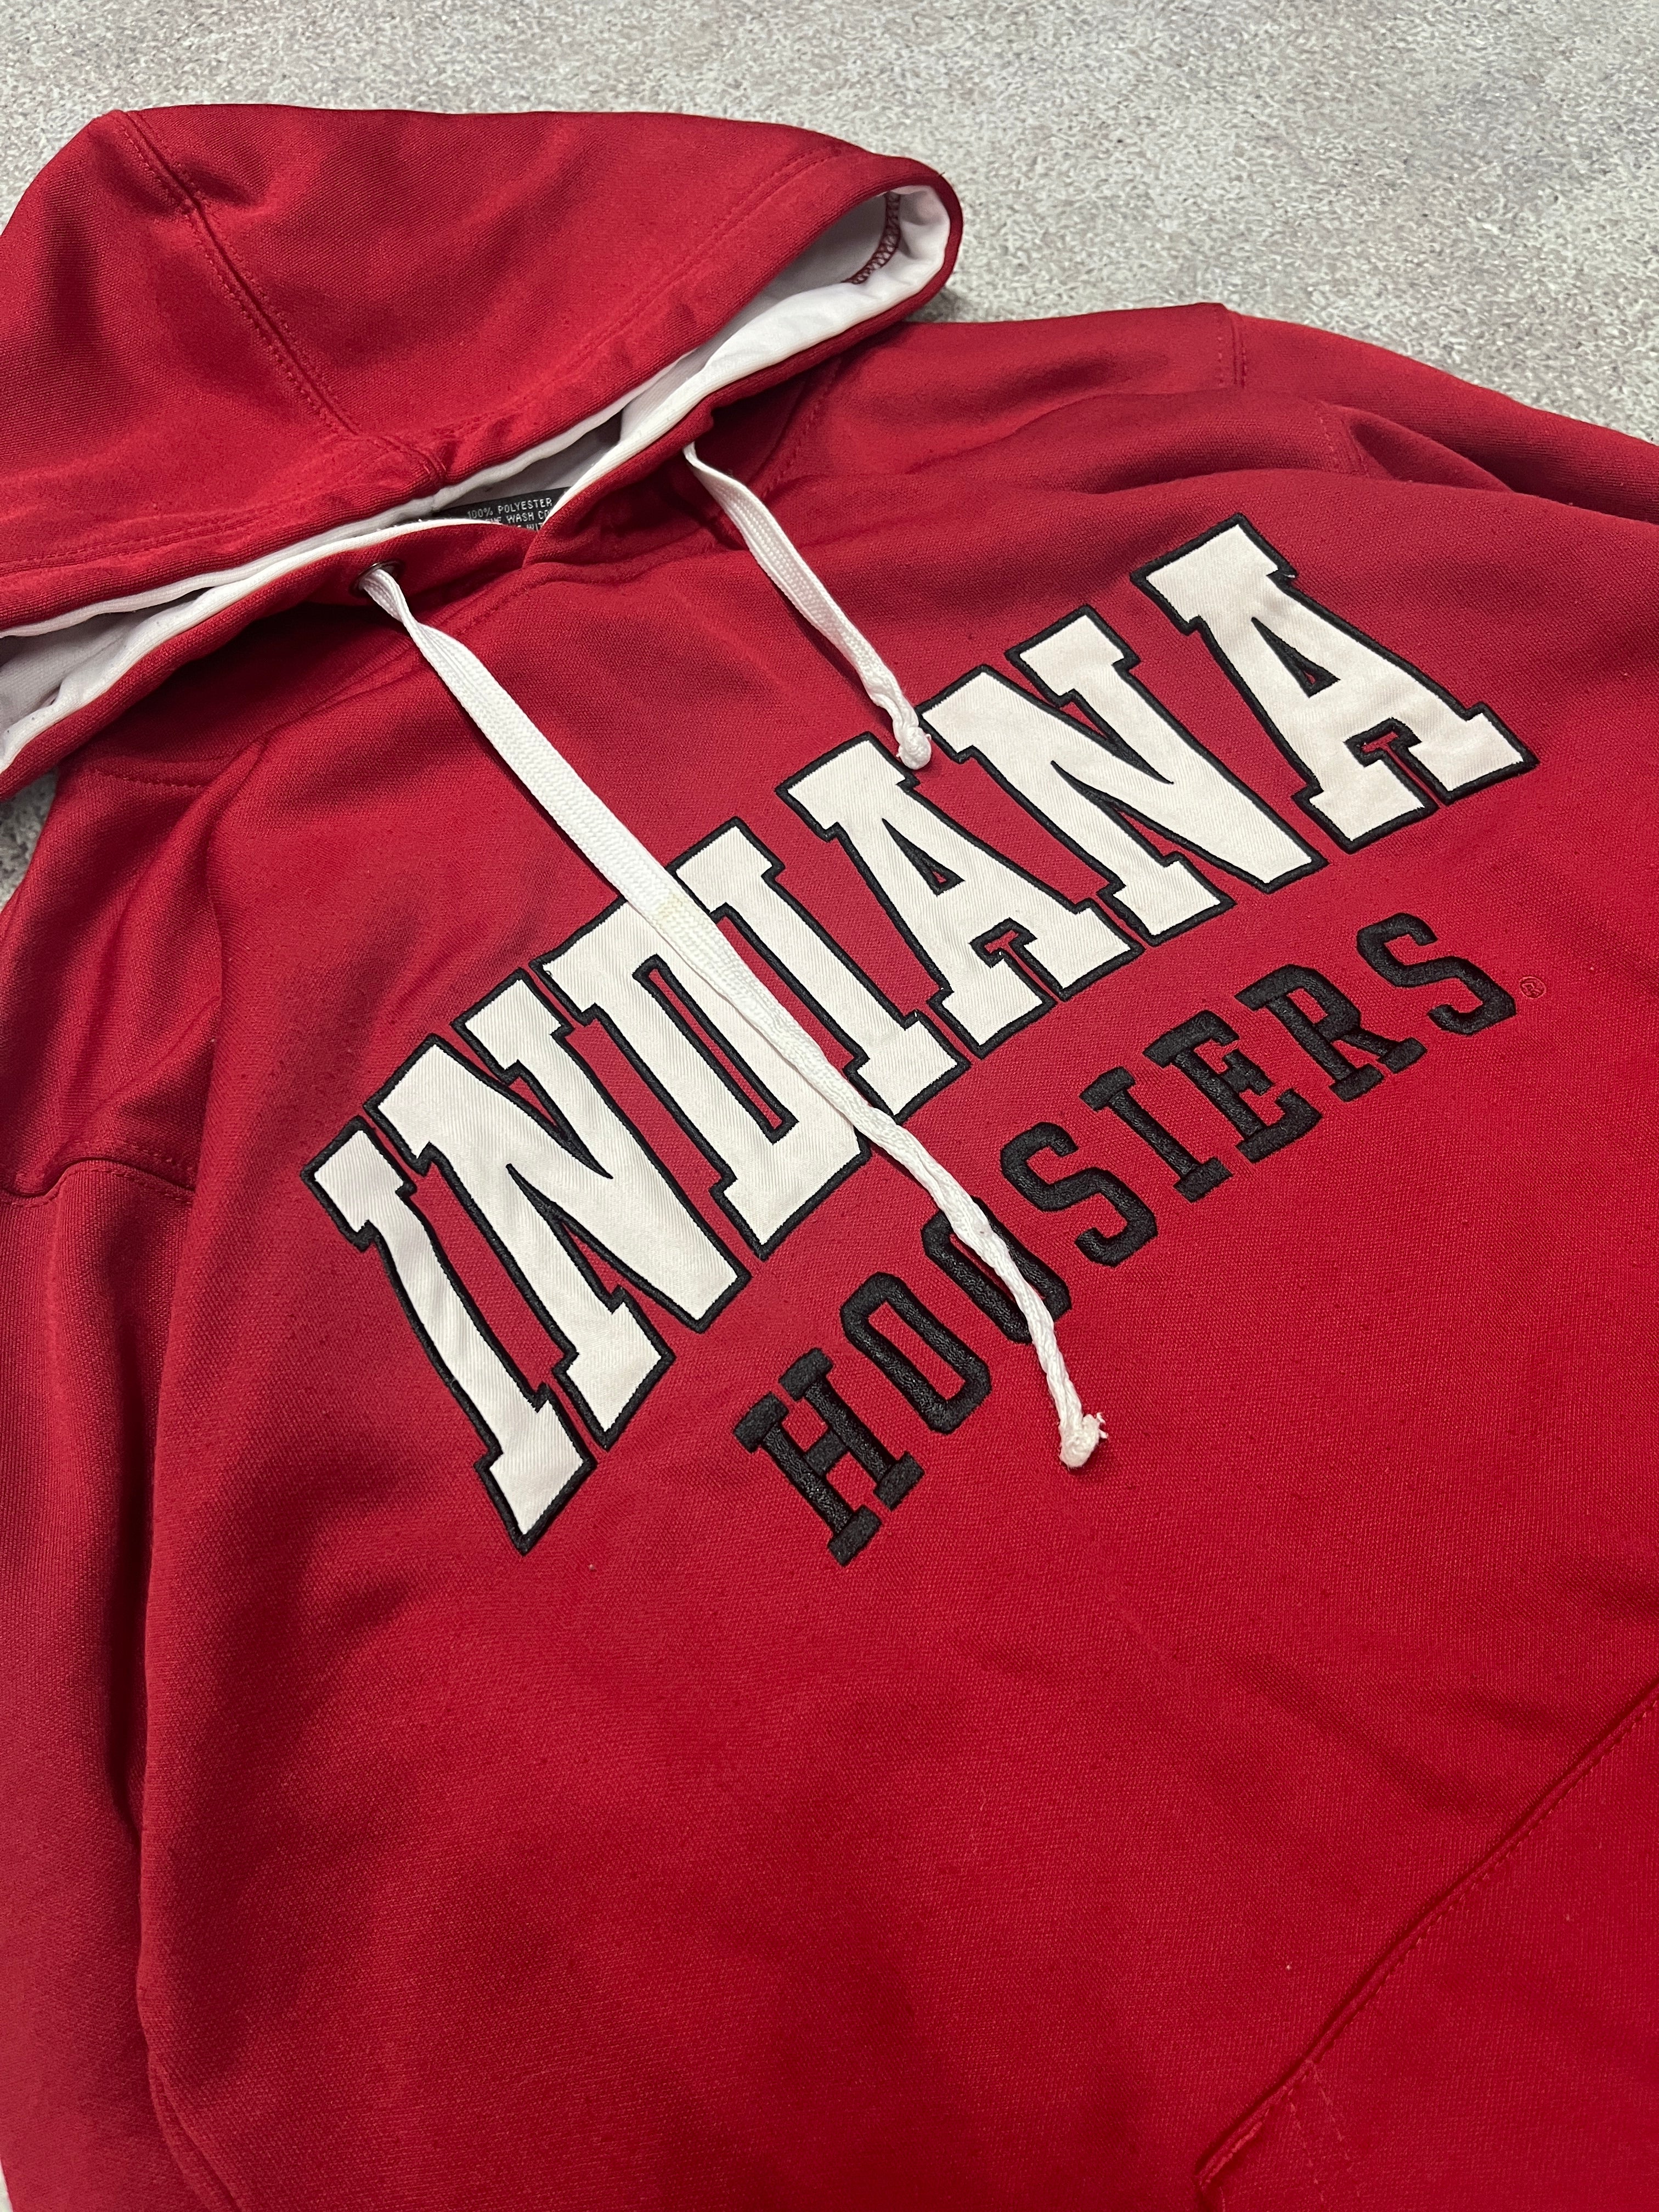 Vintage Indiana Hoosiers Hoodie Red // Small - RHAGHOUSE VINTAGE